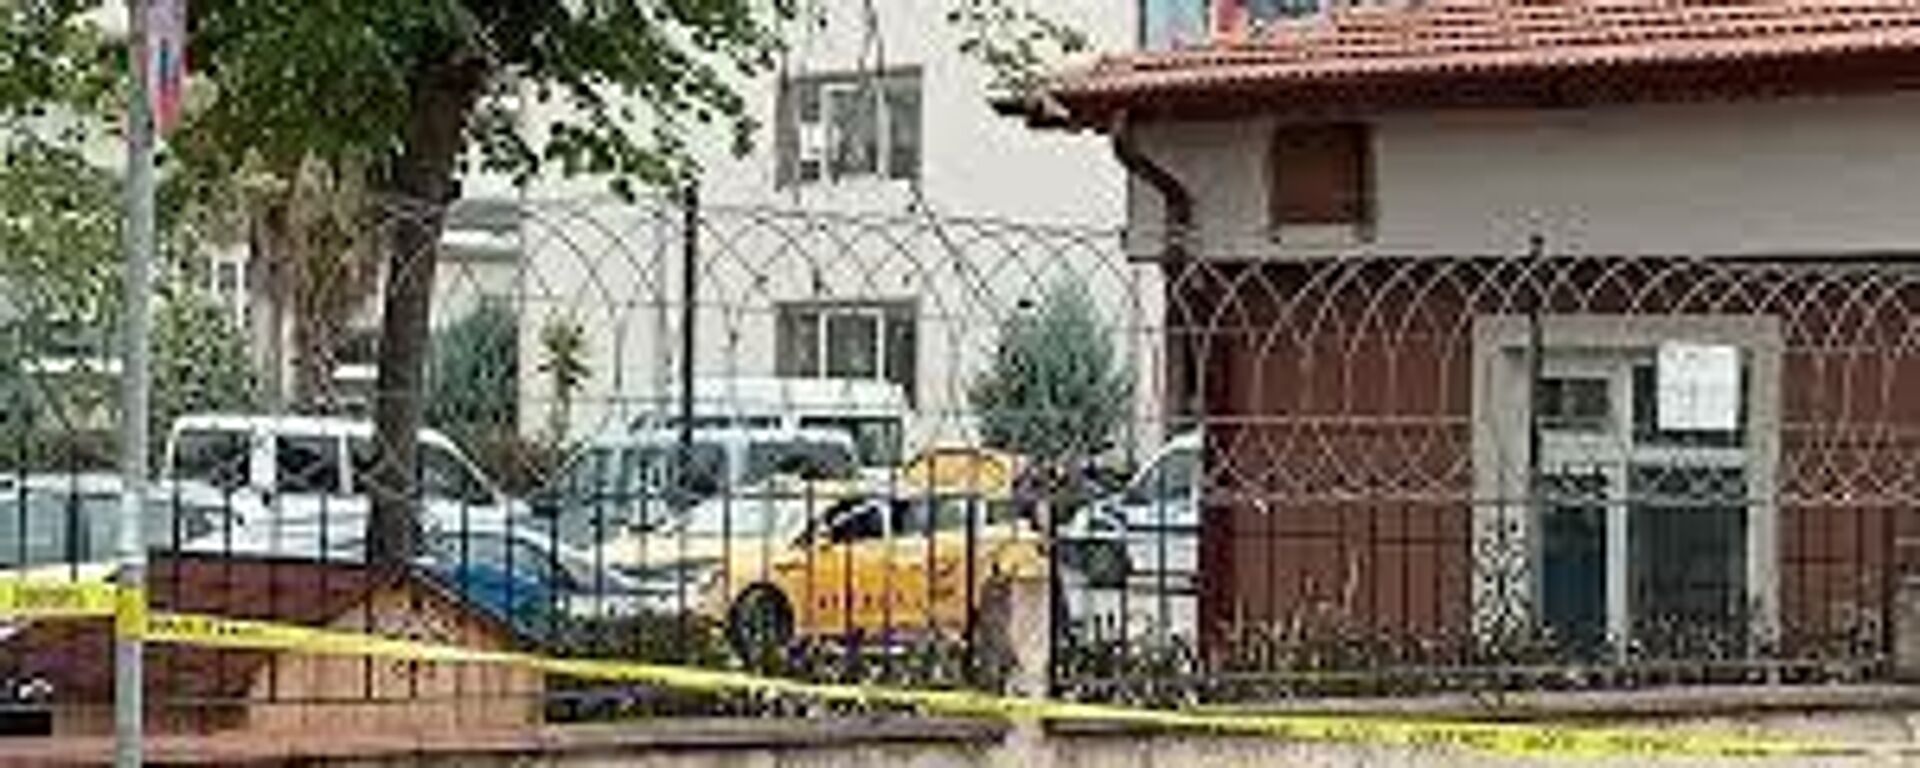 Kocaeli'de kadın cinayeti: Sevgilisini öldürdü, cesedi taksiyle karakola götürdü - Sputnik Türkiye, 1920, 28.10.2021